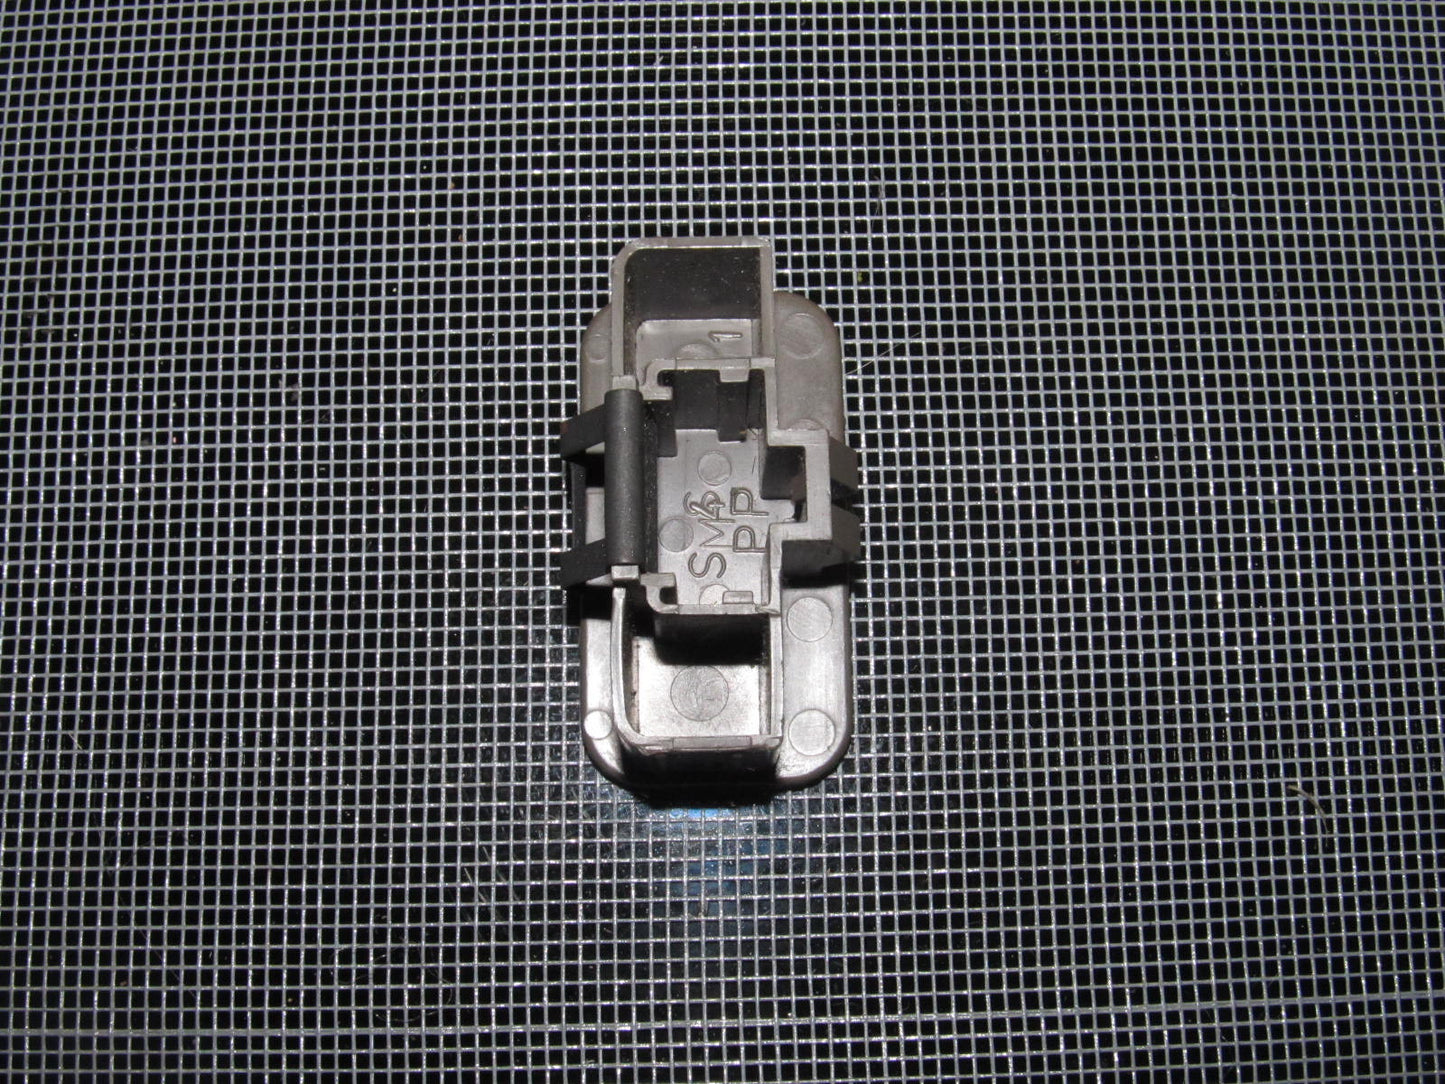 94-01 Acura Integra OEM Brown Console Filler Cap - 1 piece